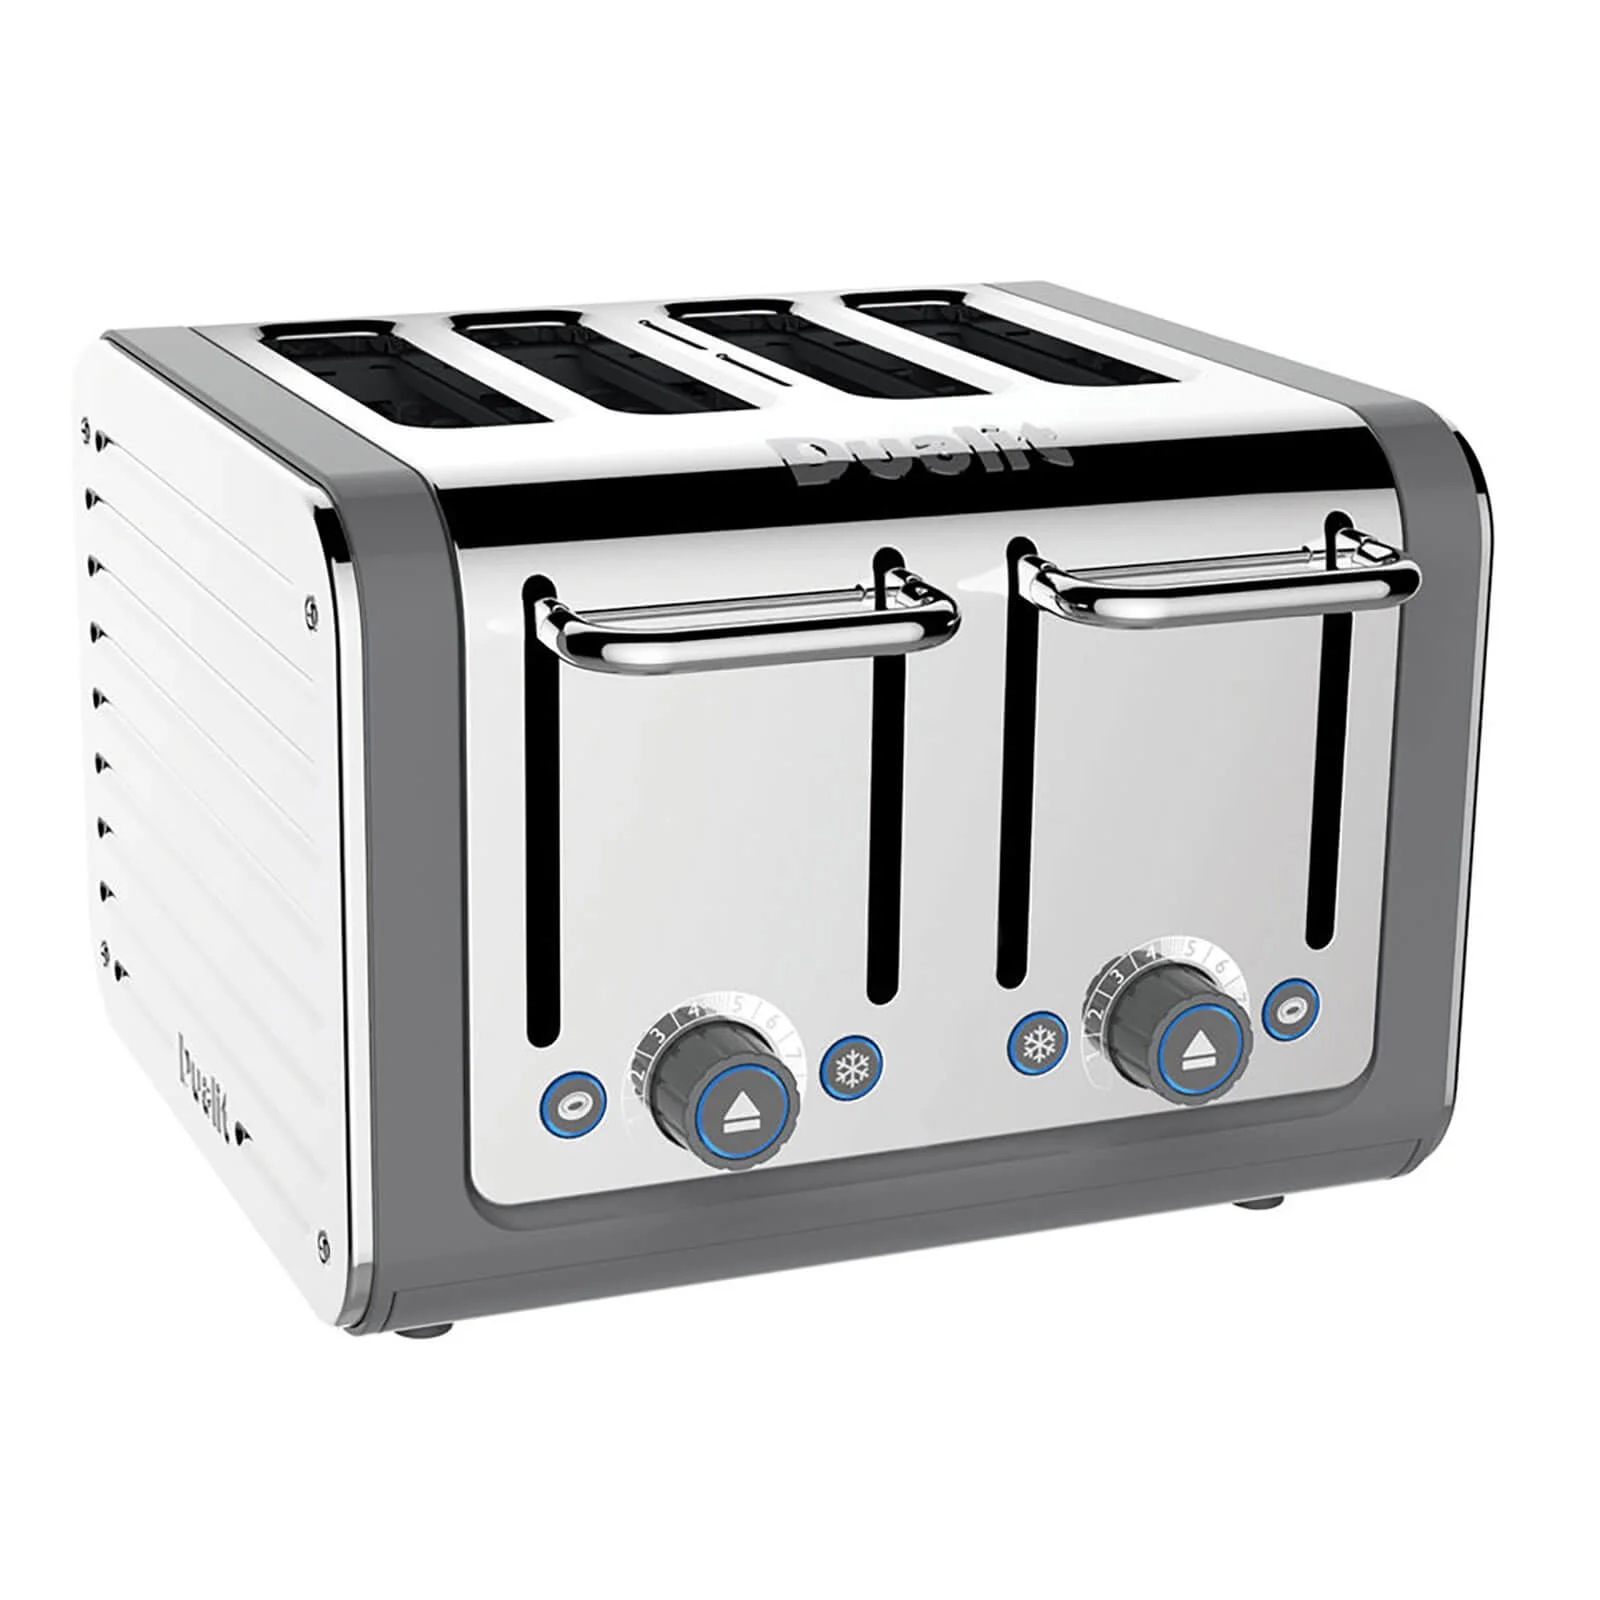 Dualit 46526 Architect 4 Slot Toaster - Grey Image 1